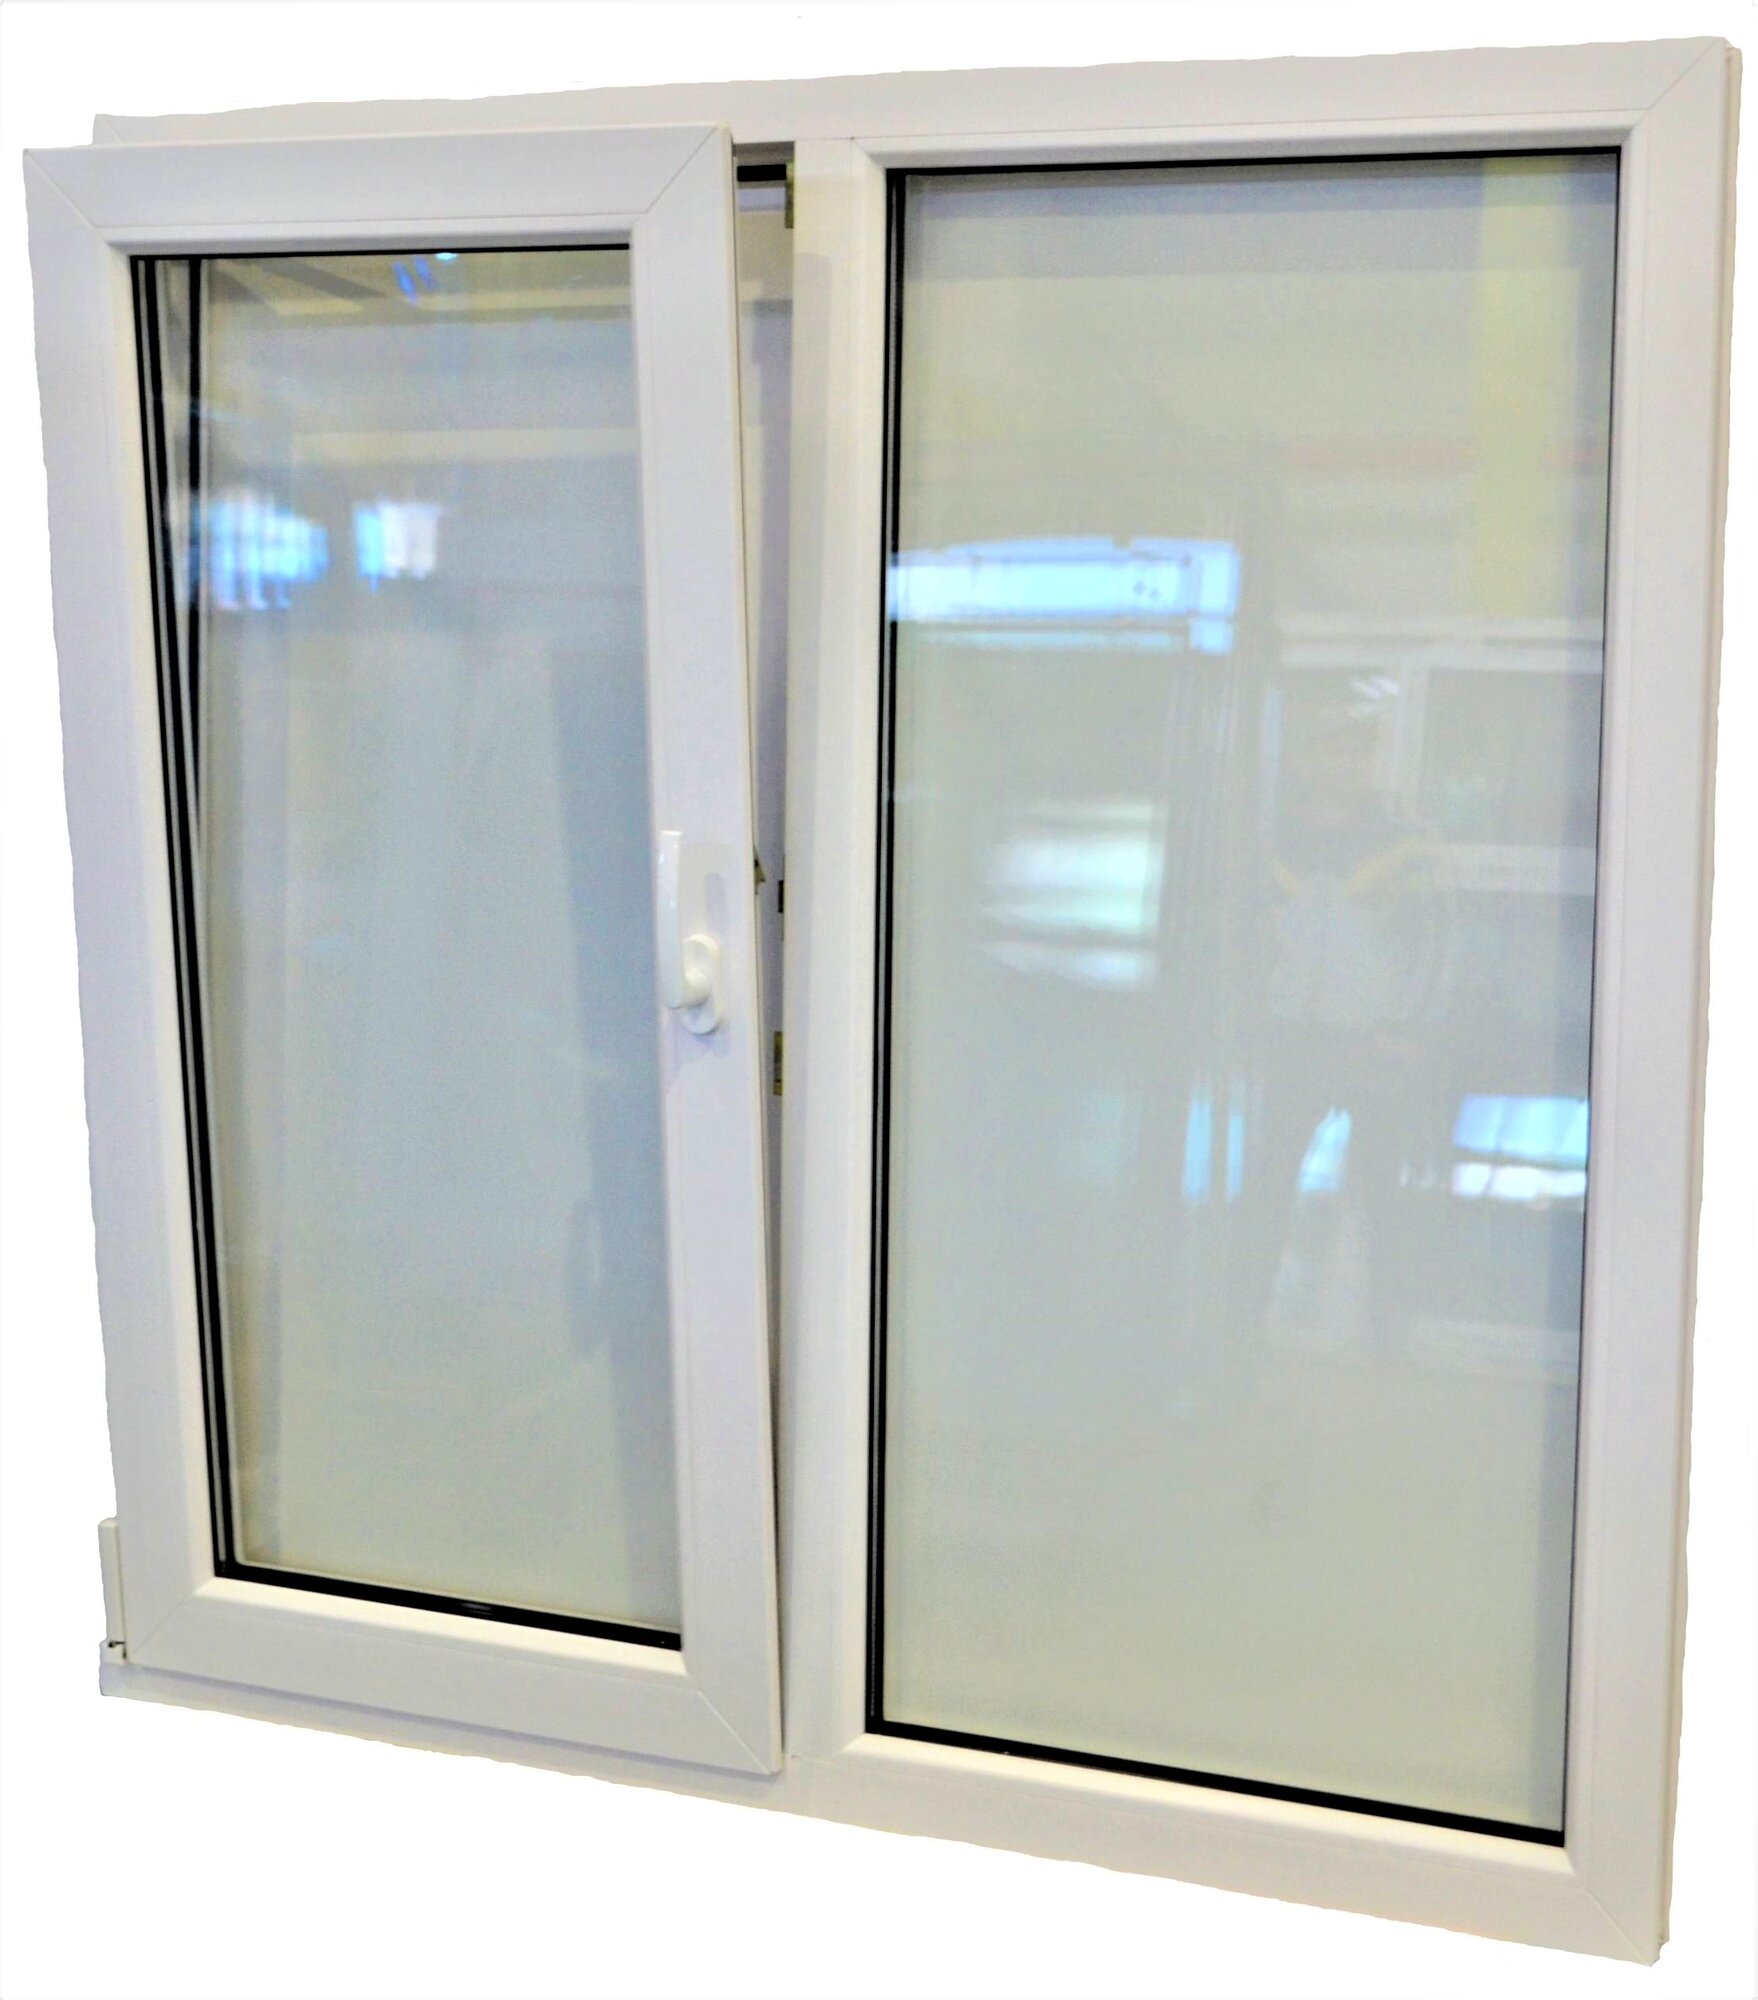 Пластиковое окно ПВХ (1300-1400) поворотно-откидная левая створка, стеклопакет 32мм (3 стекла)